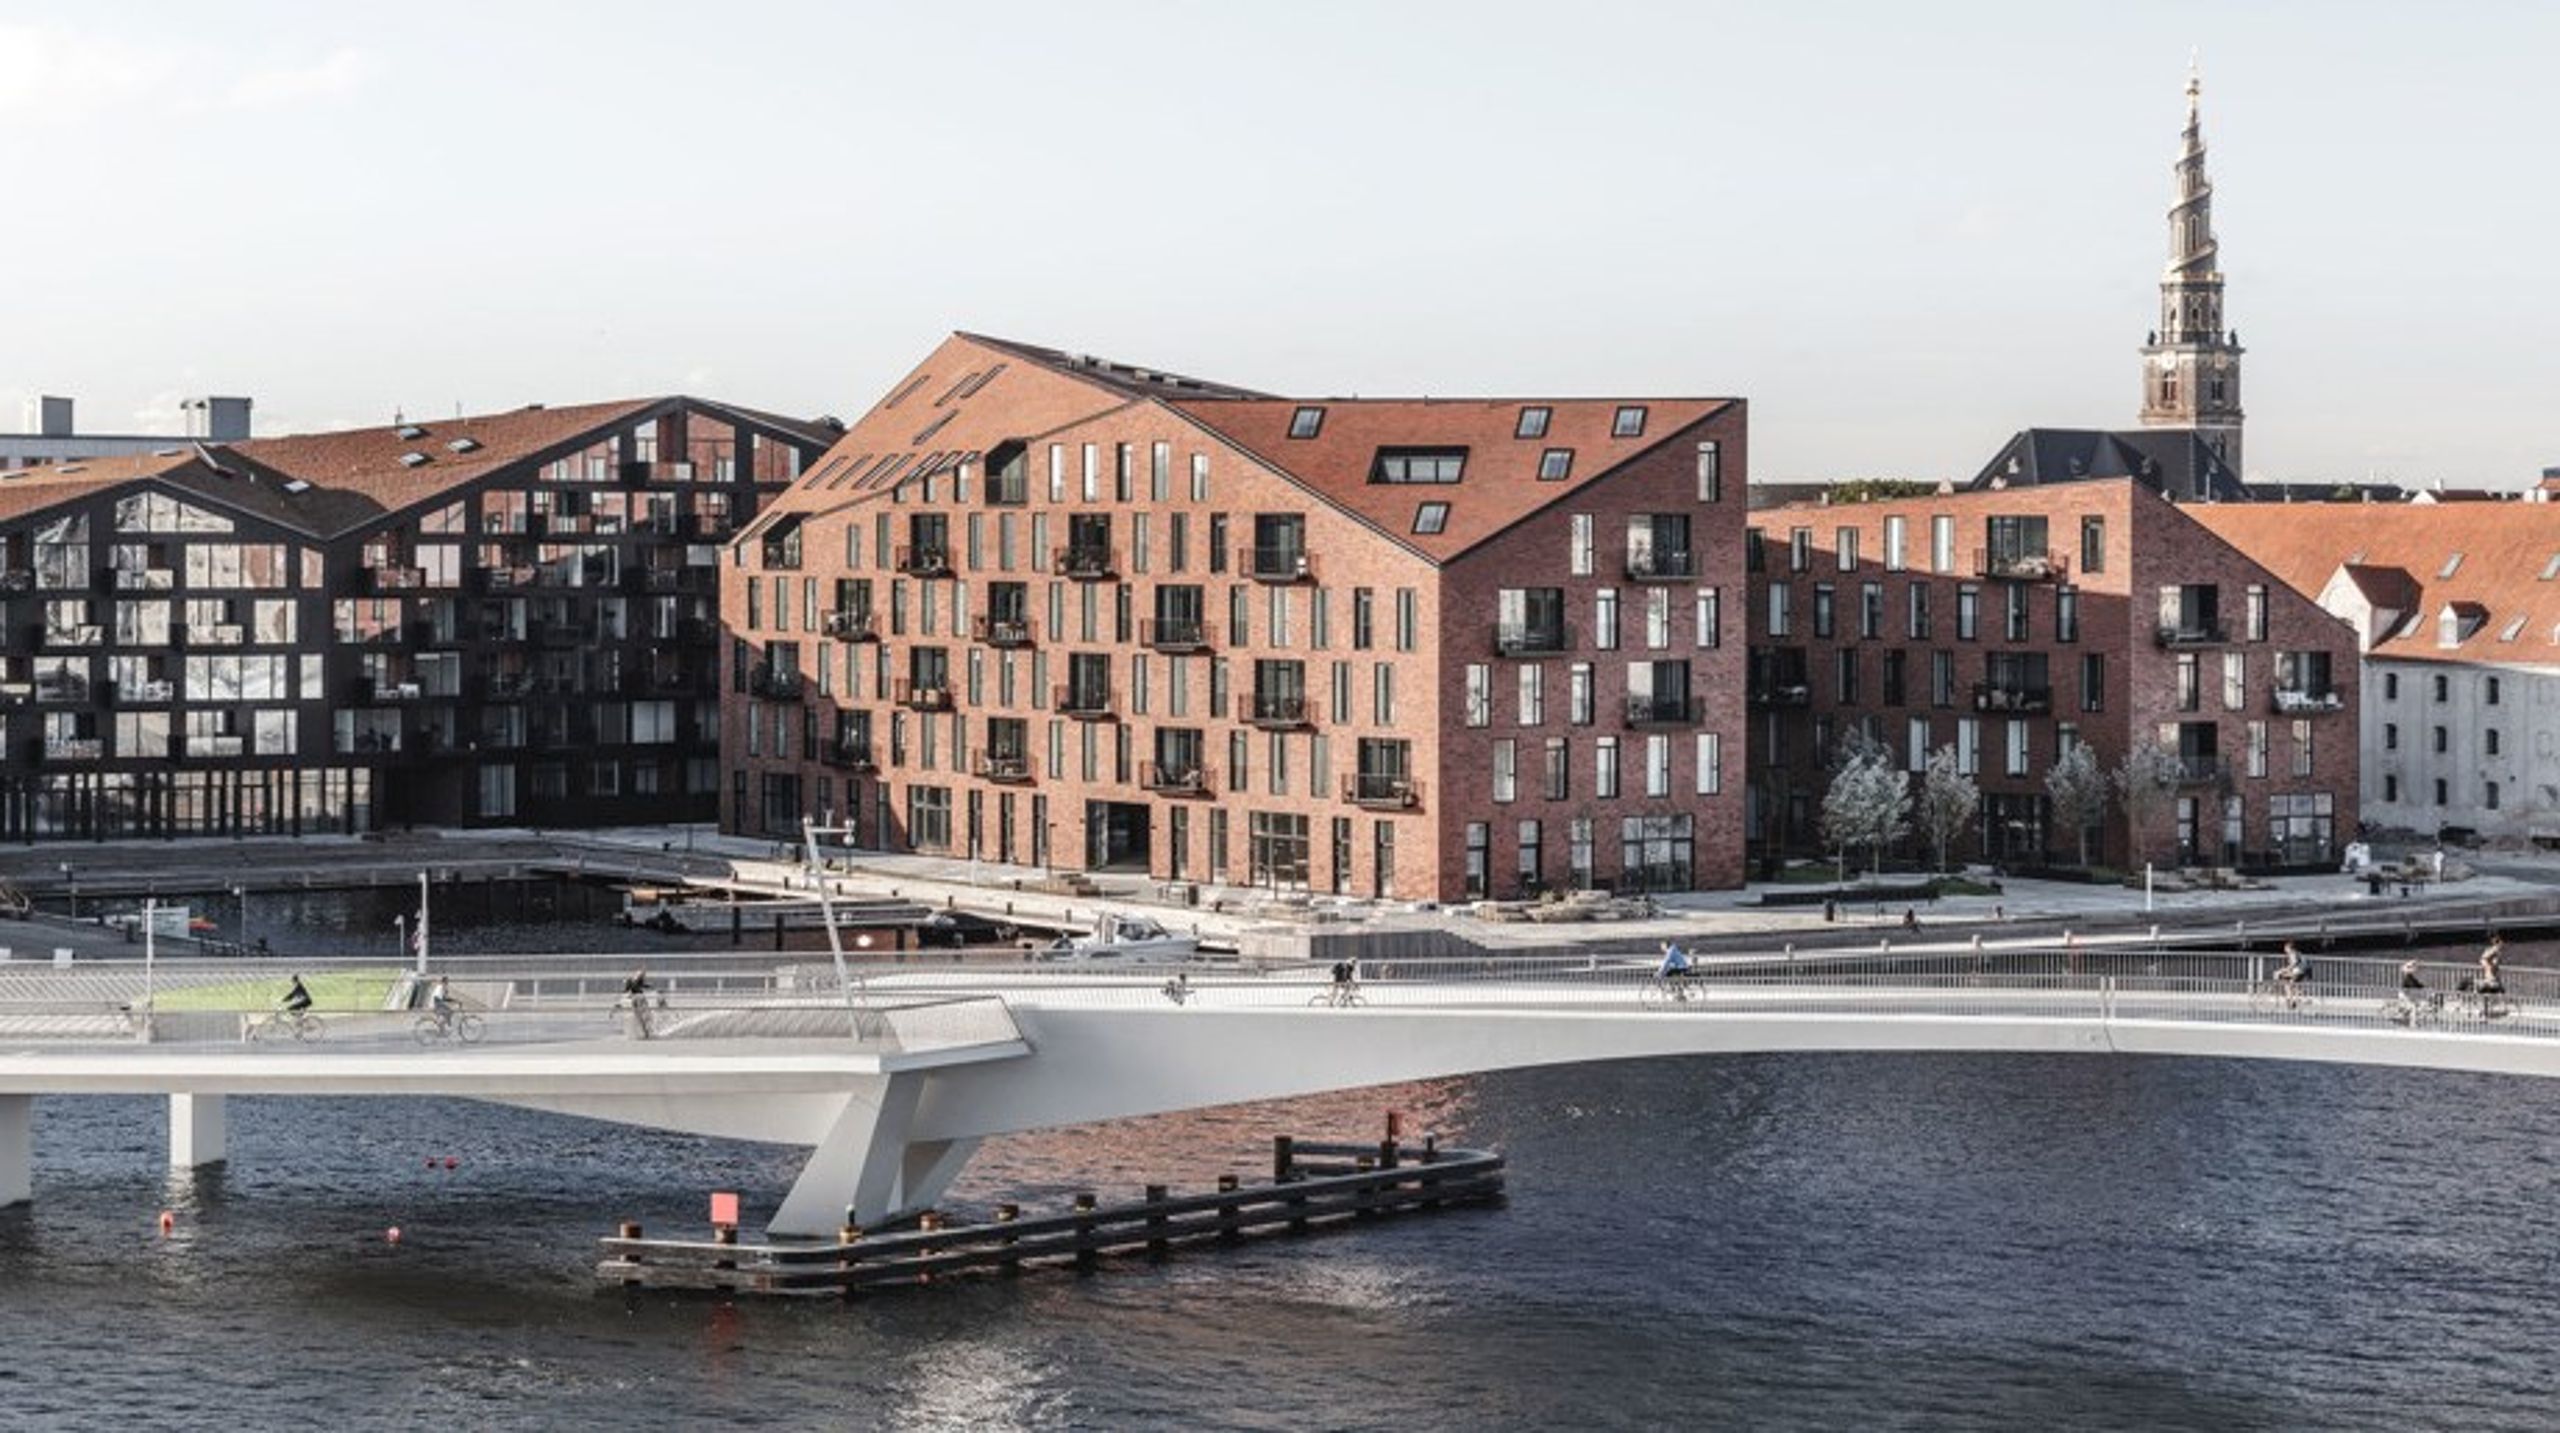 Den administrerende direktør i Vilhelm Lauritzen Arkitekter, som blandt andet har tegnet boliger ved Krøyers Plads i København, stopper øjeblikkeligt.